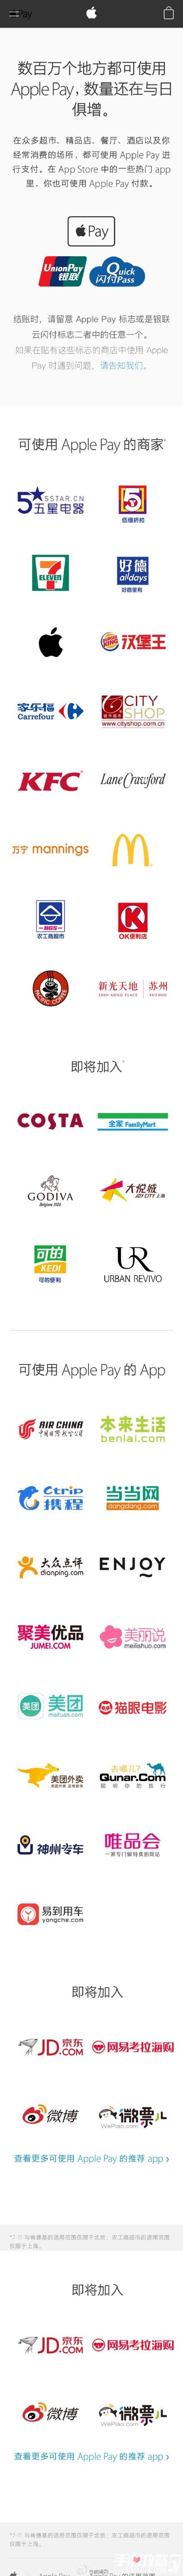 可使用Apple Pay的商家和App1